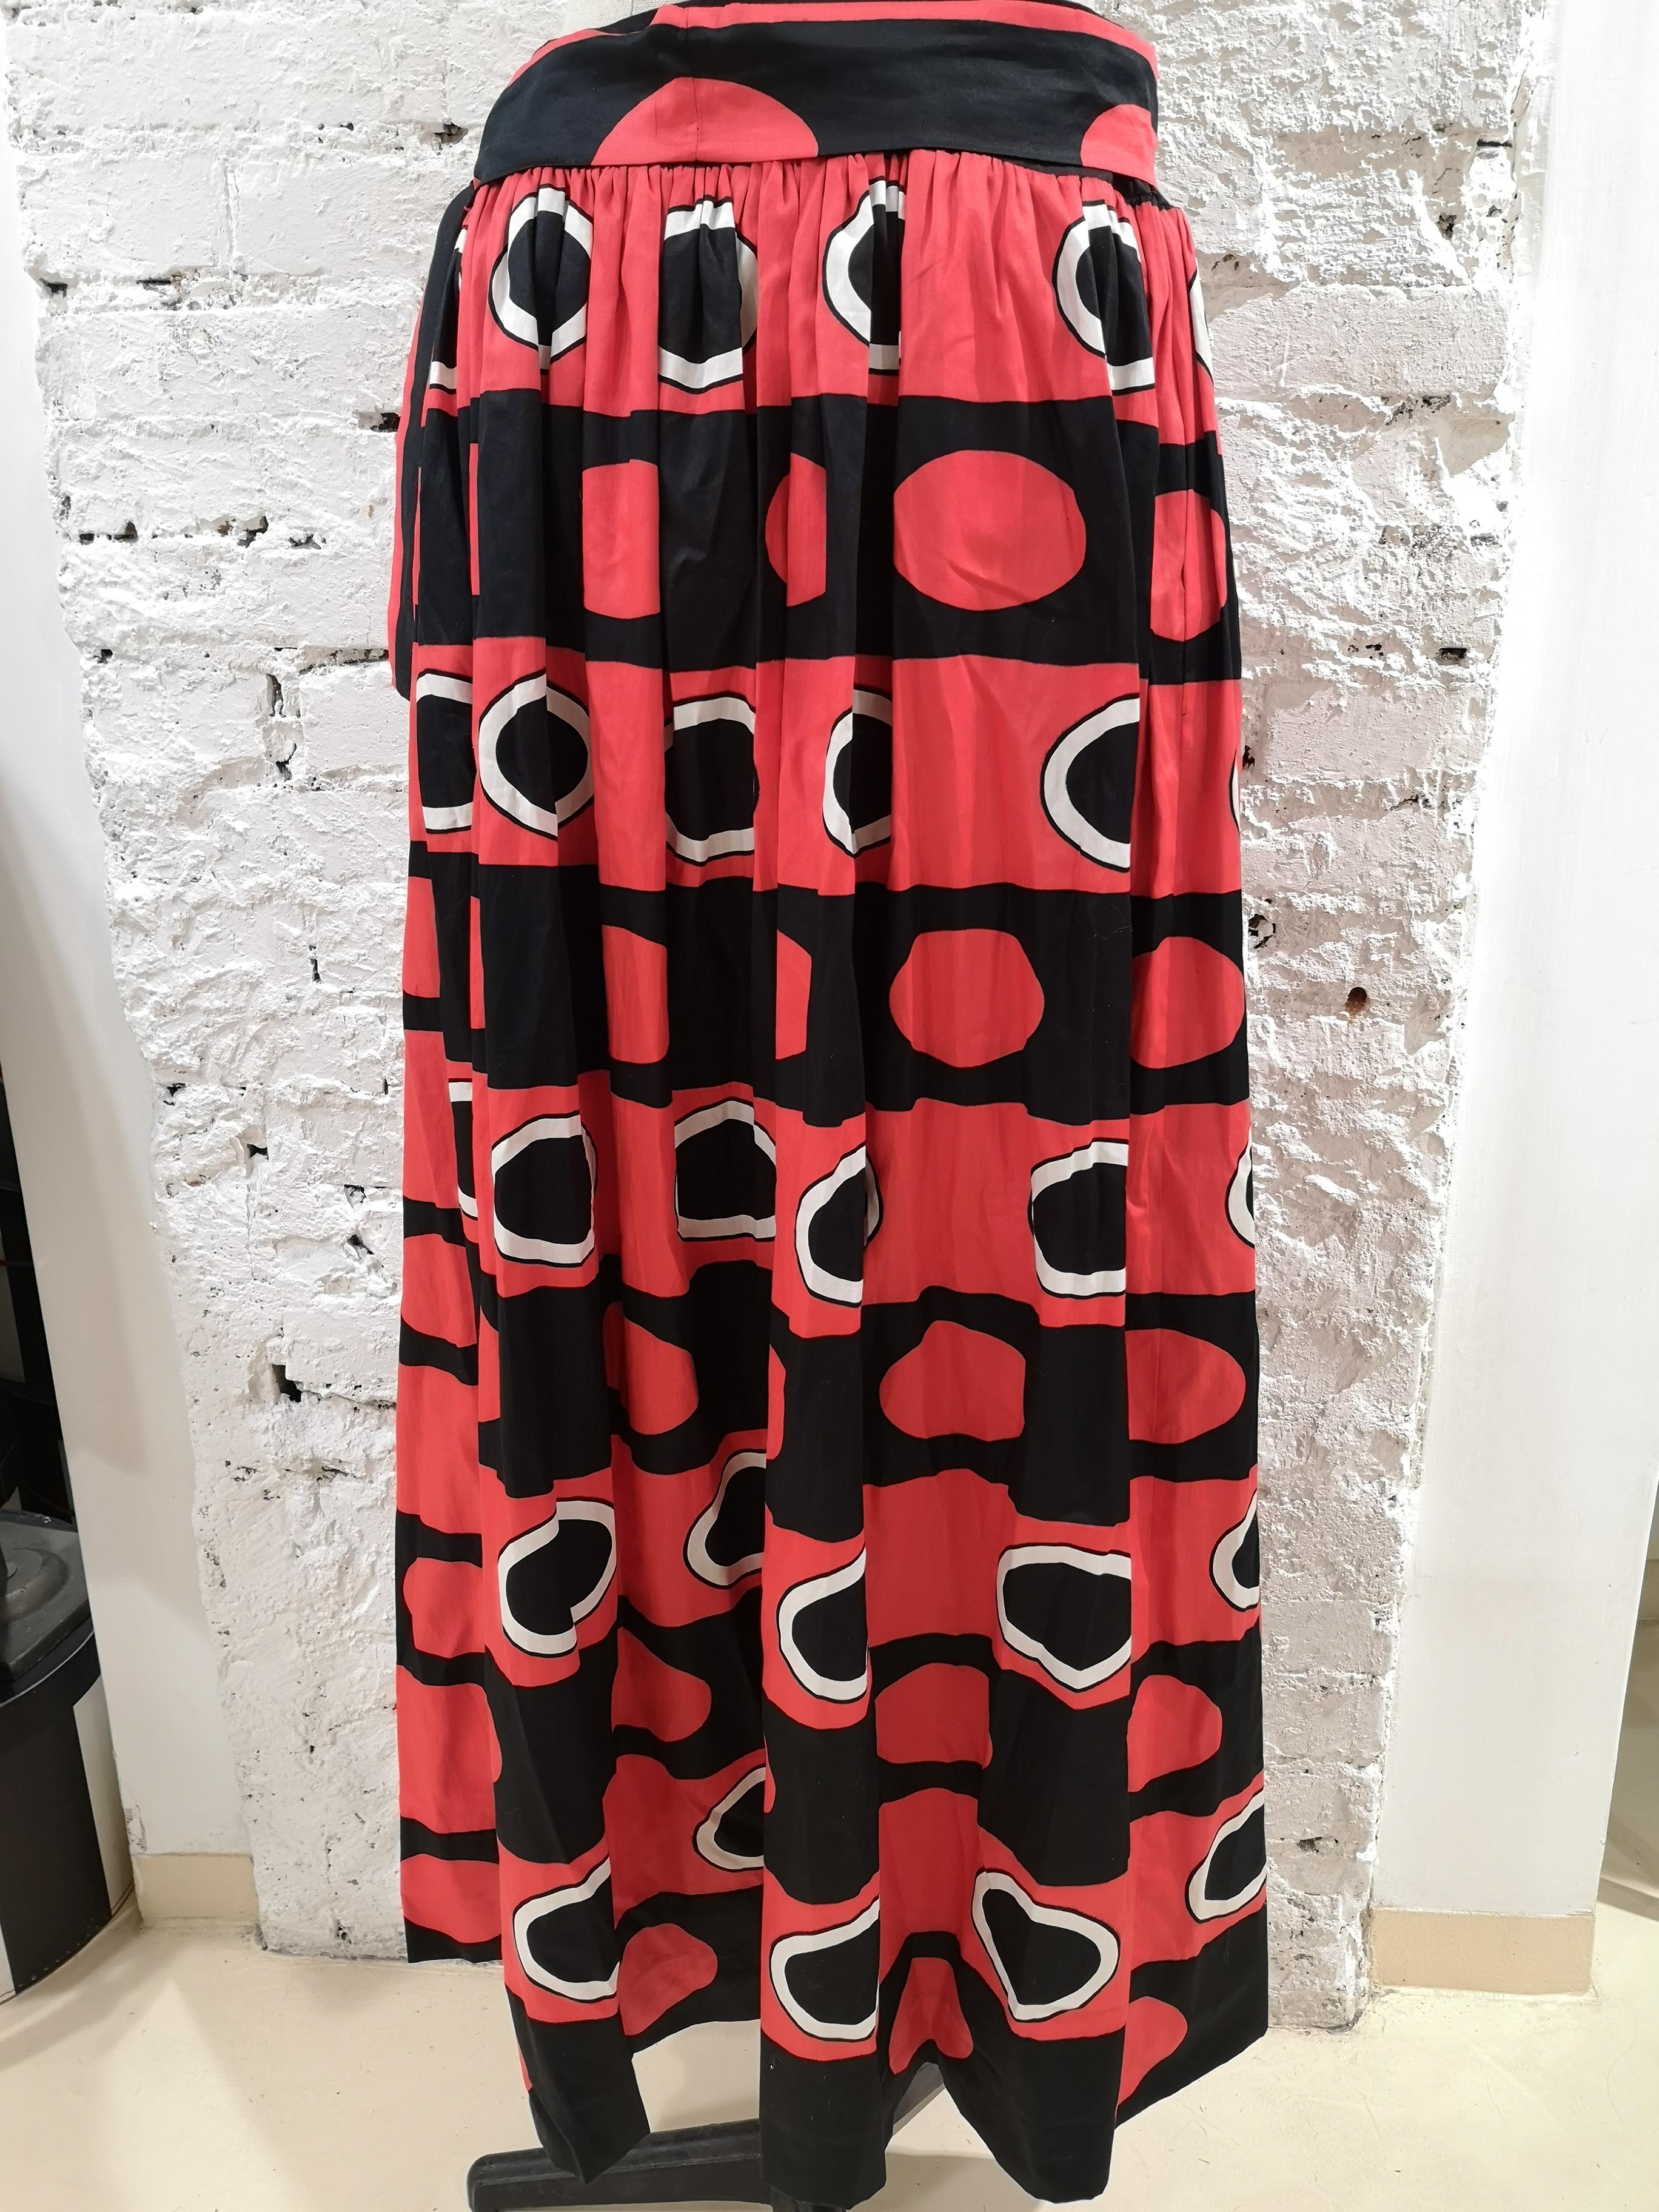 Yves Saint Laurent Rive Gauche black red white long Skirt 3